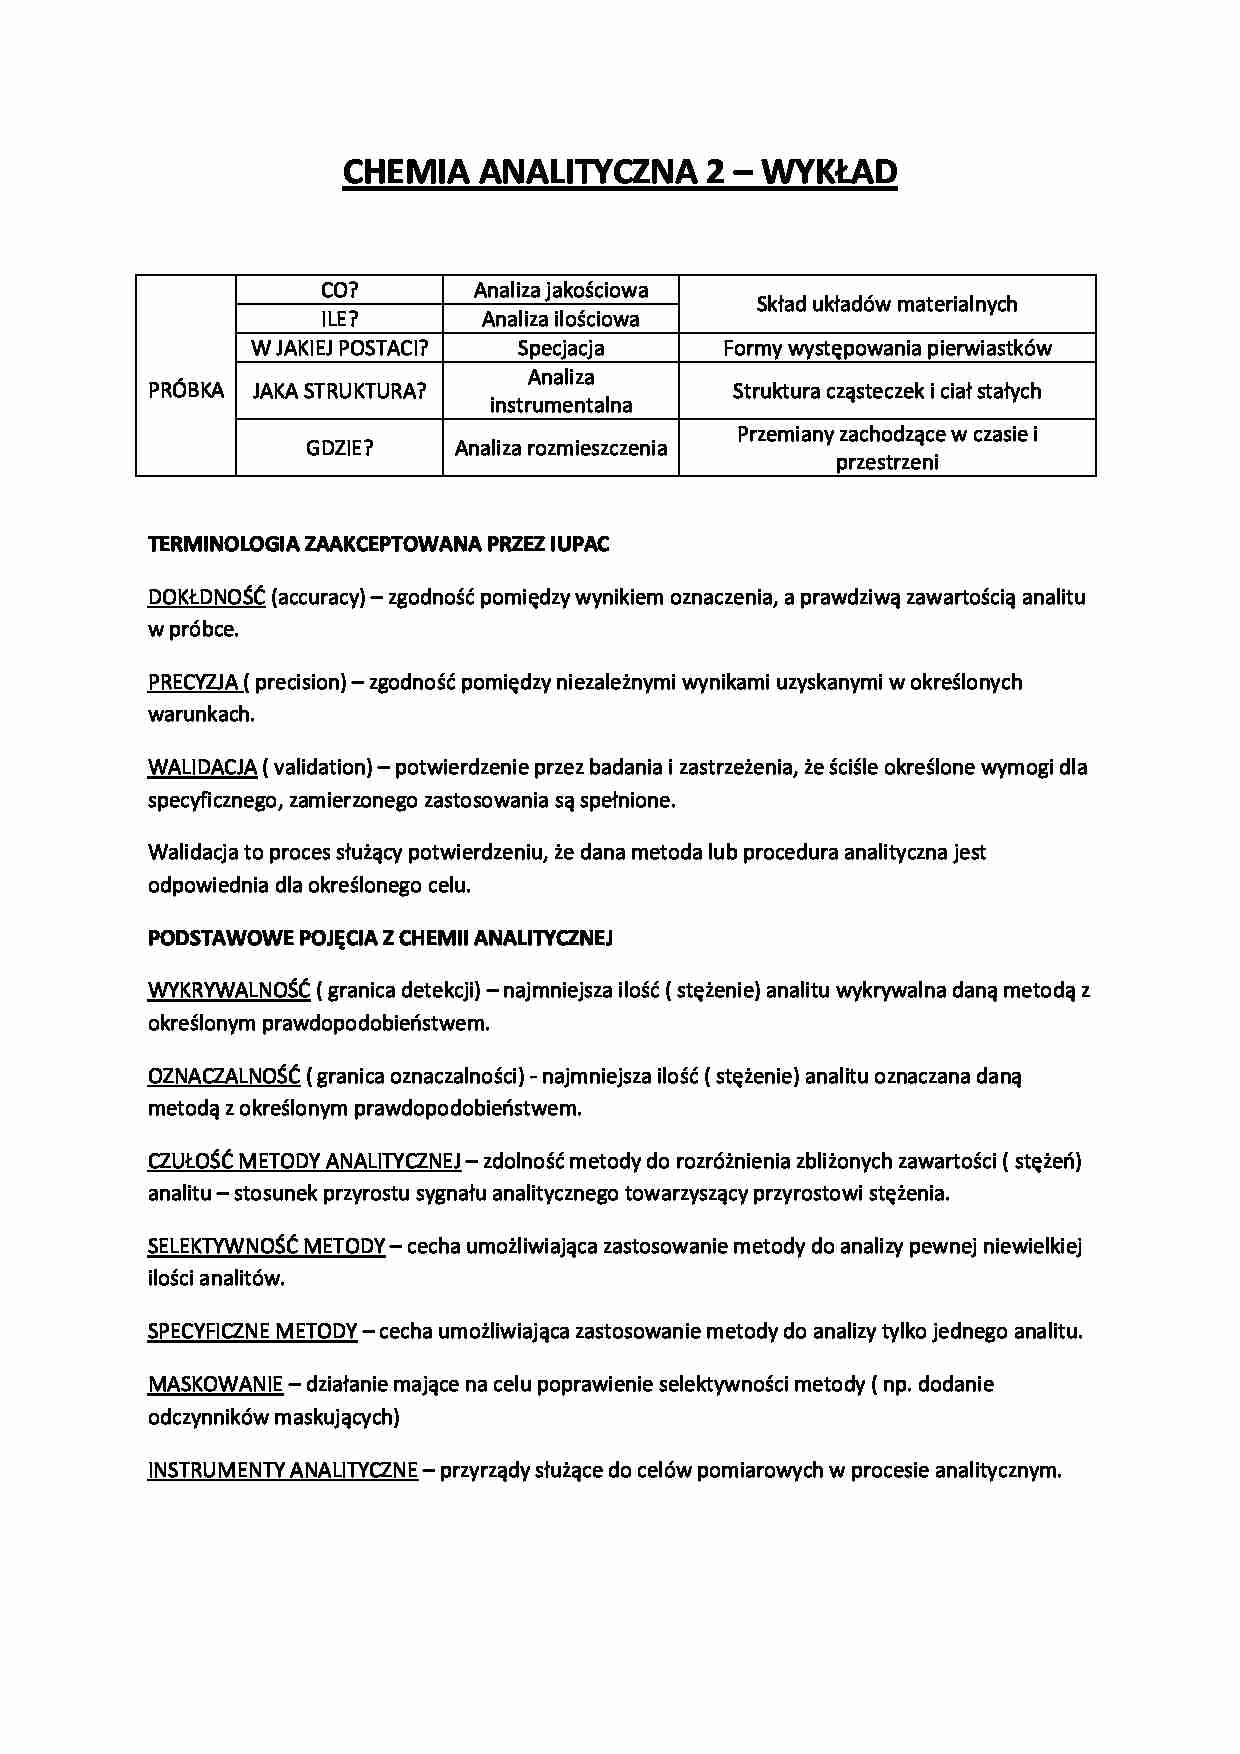 Chemia analityczna - wykład - Analiza jakościowa - strona 1